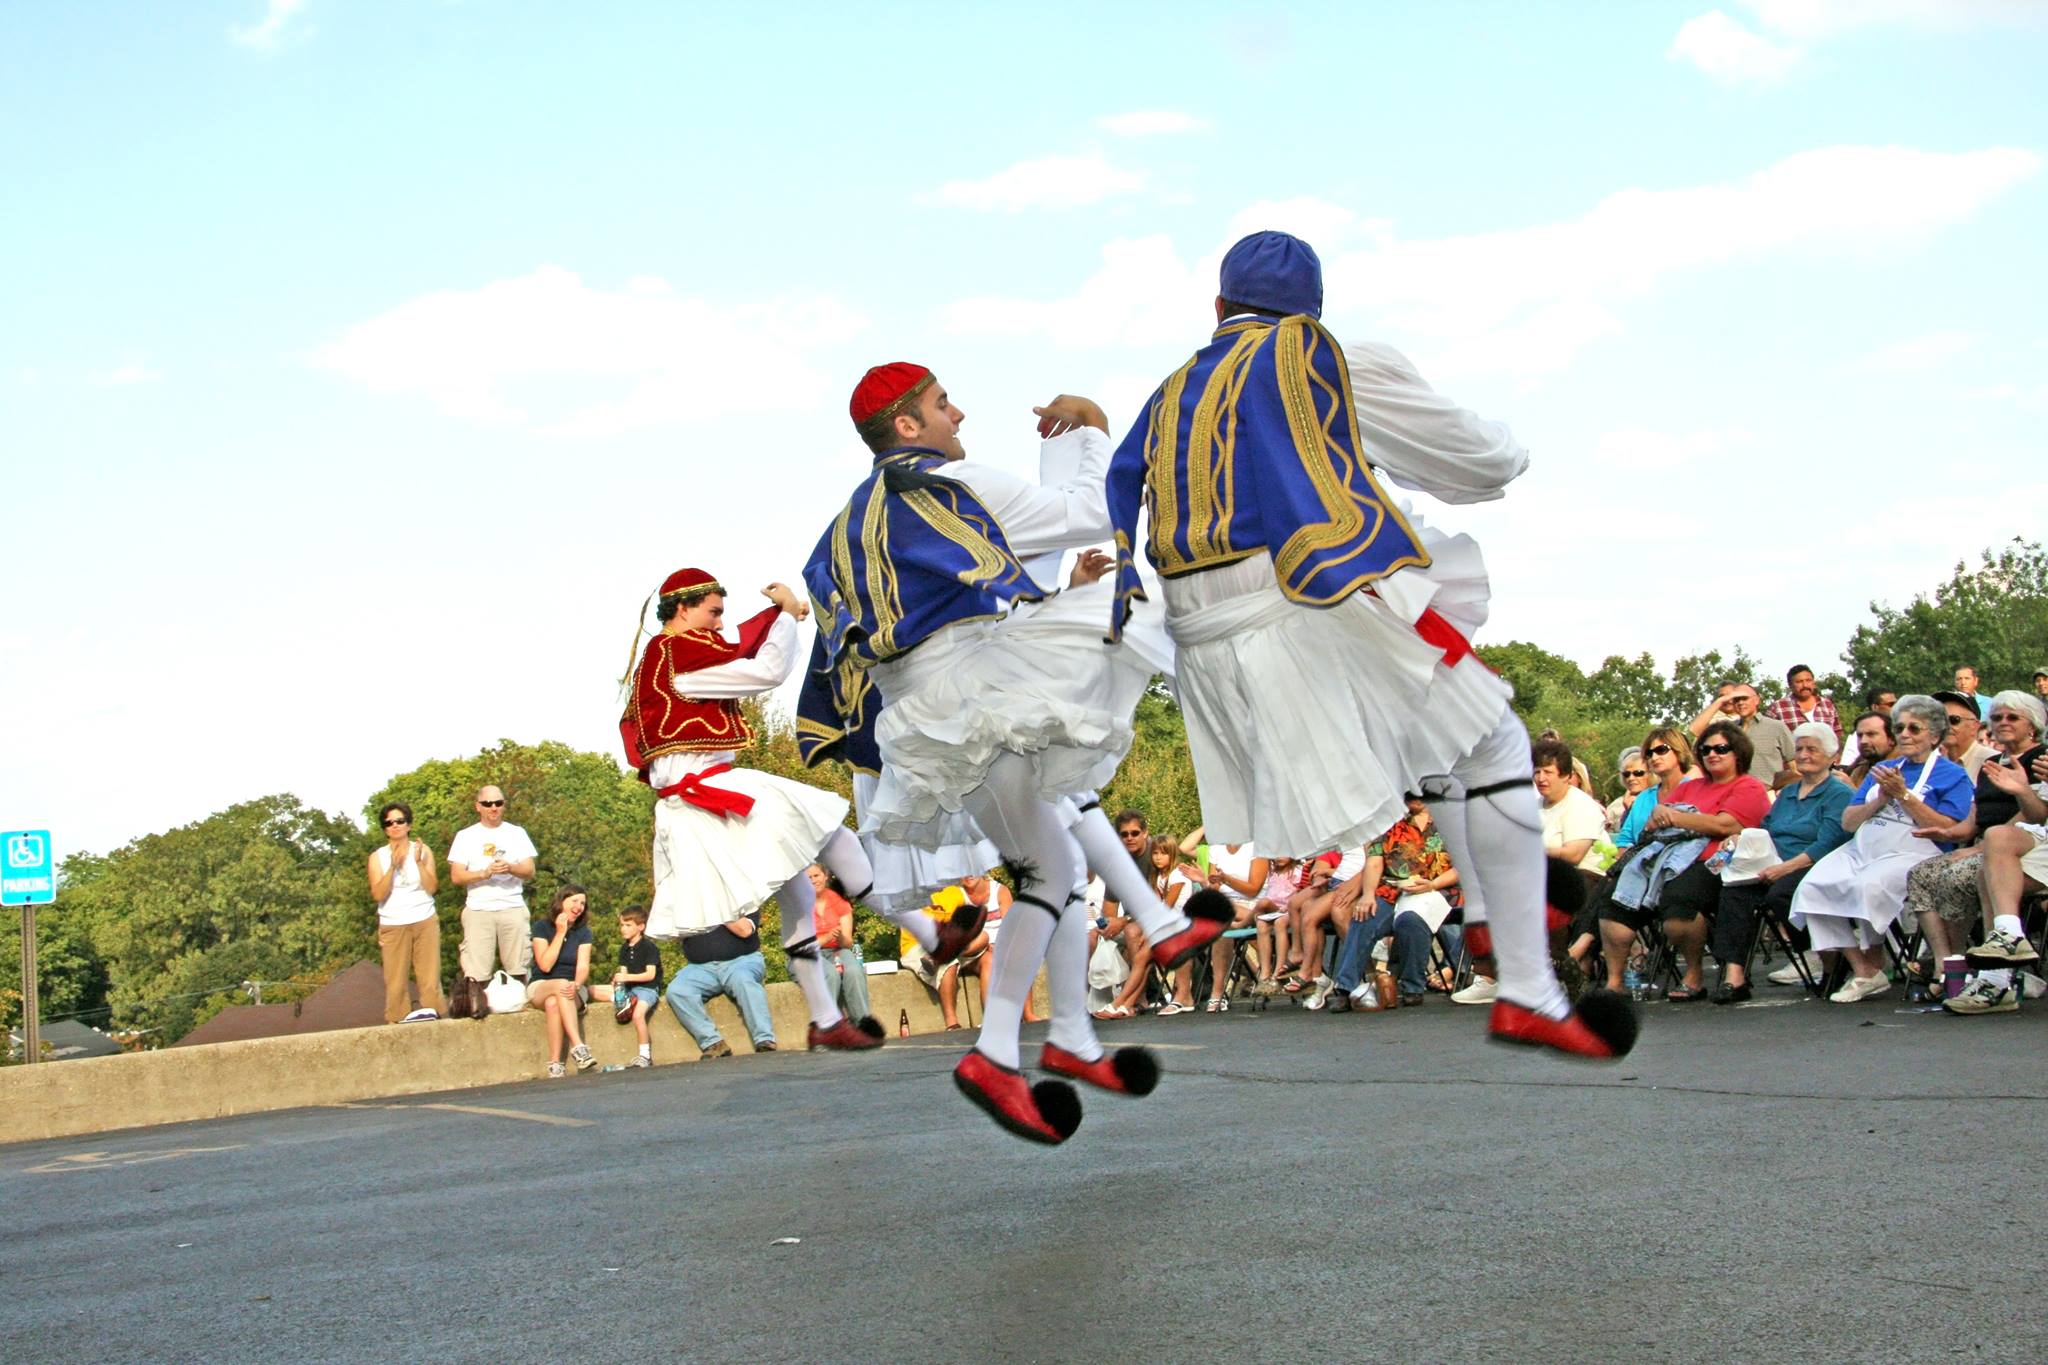 dancers at greek festival event in dayton